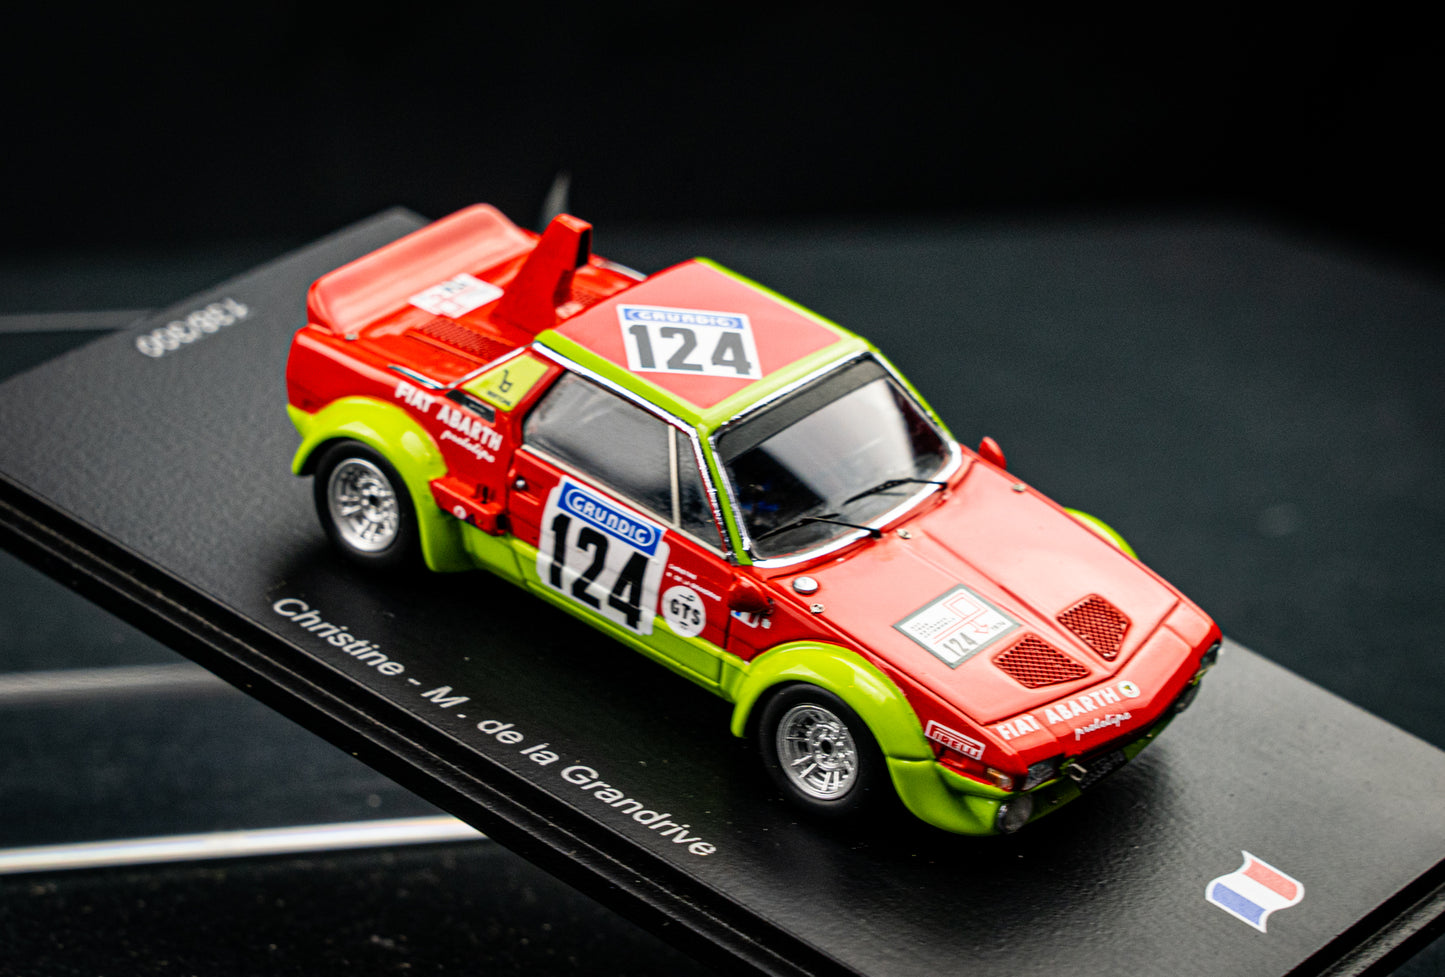 Fiat X 1/9  lim. edition 300 Stk. - #124 Christine / de la Grandrive - Tour de France 1974 - Spark 1:43